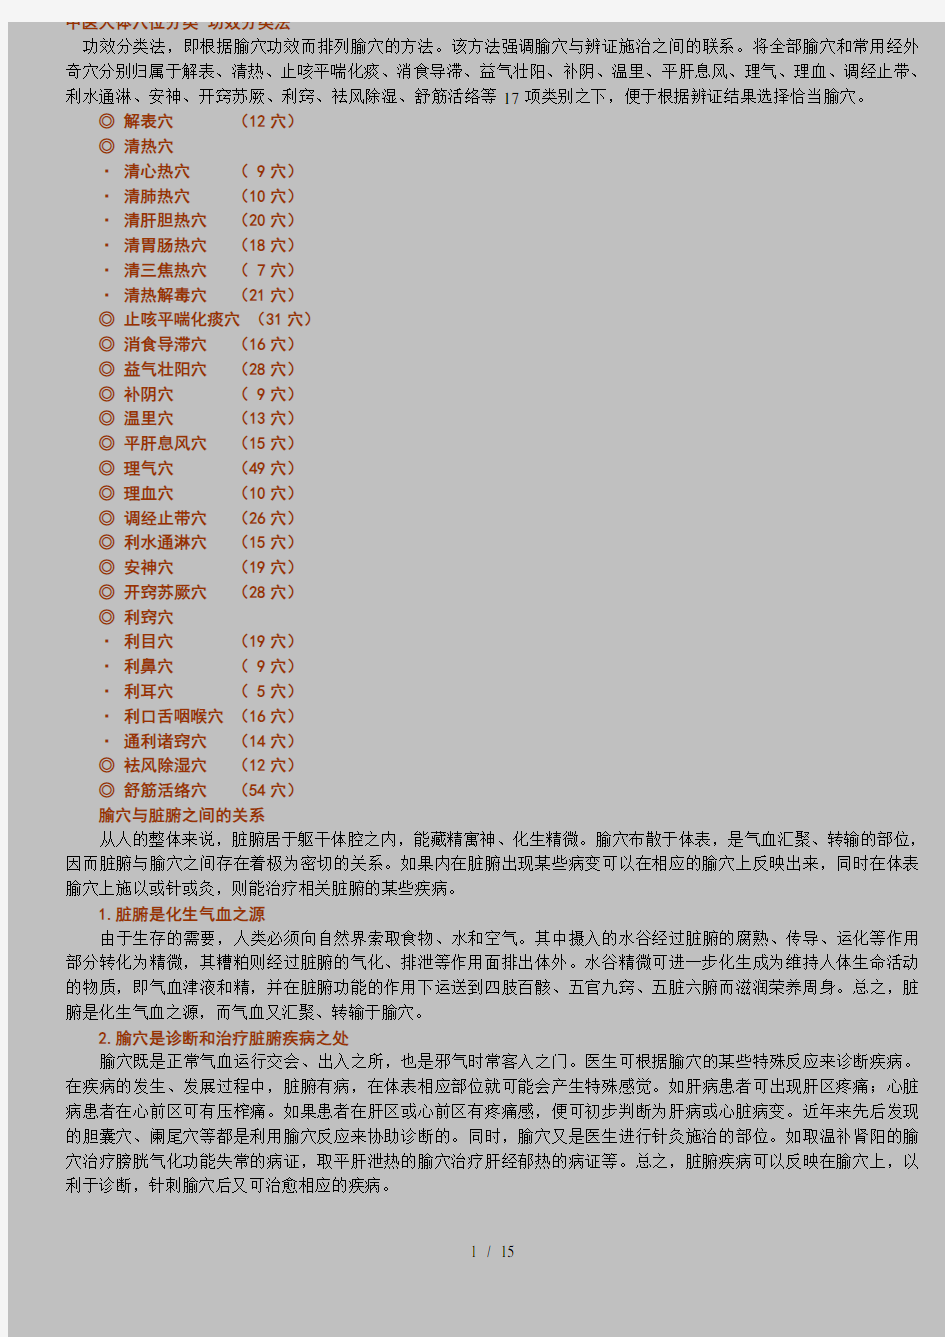 中医人体穴位分类-功效分类法(超完整30页)